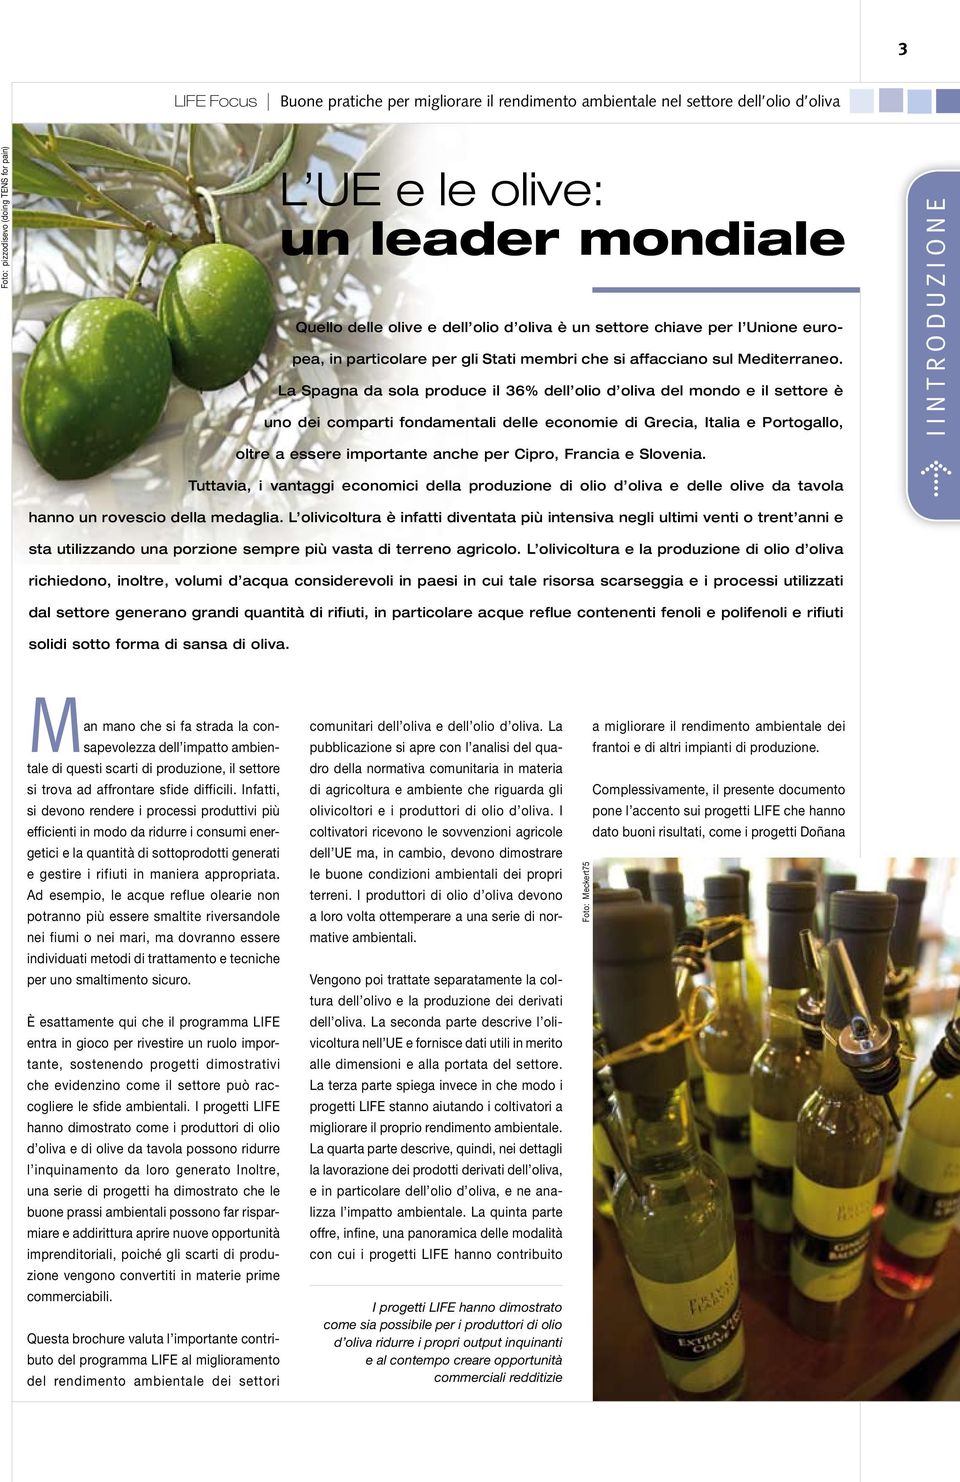 Francia e Slovenia. Tuttavia, i vantaggi economici della produzione di olio d oliva e delle olive da tavola hanno un rovescio della medaglia.